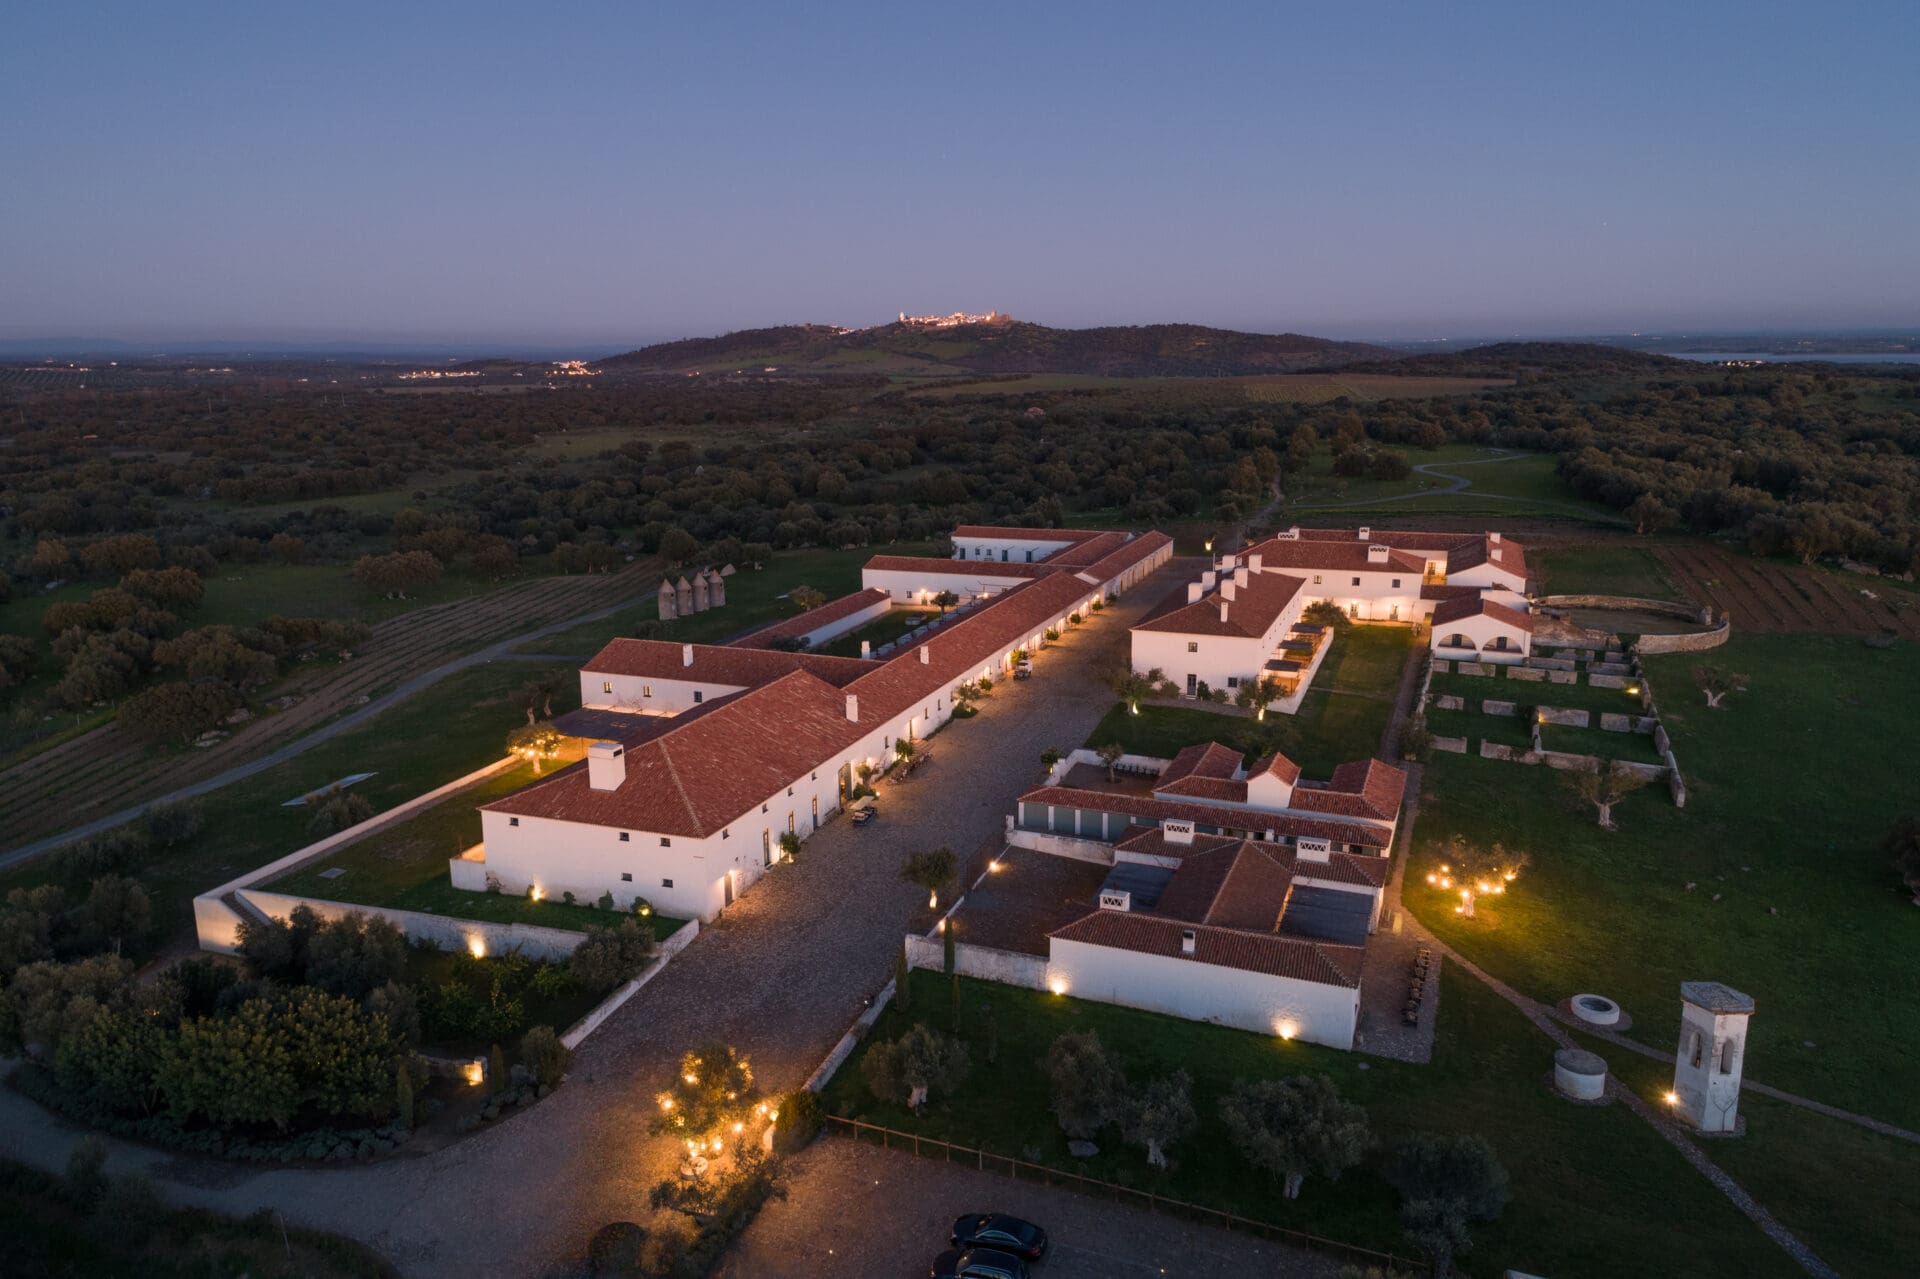 São Lourenço do Barrocal | An aerial view of the estate at dusk